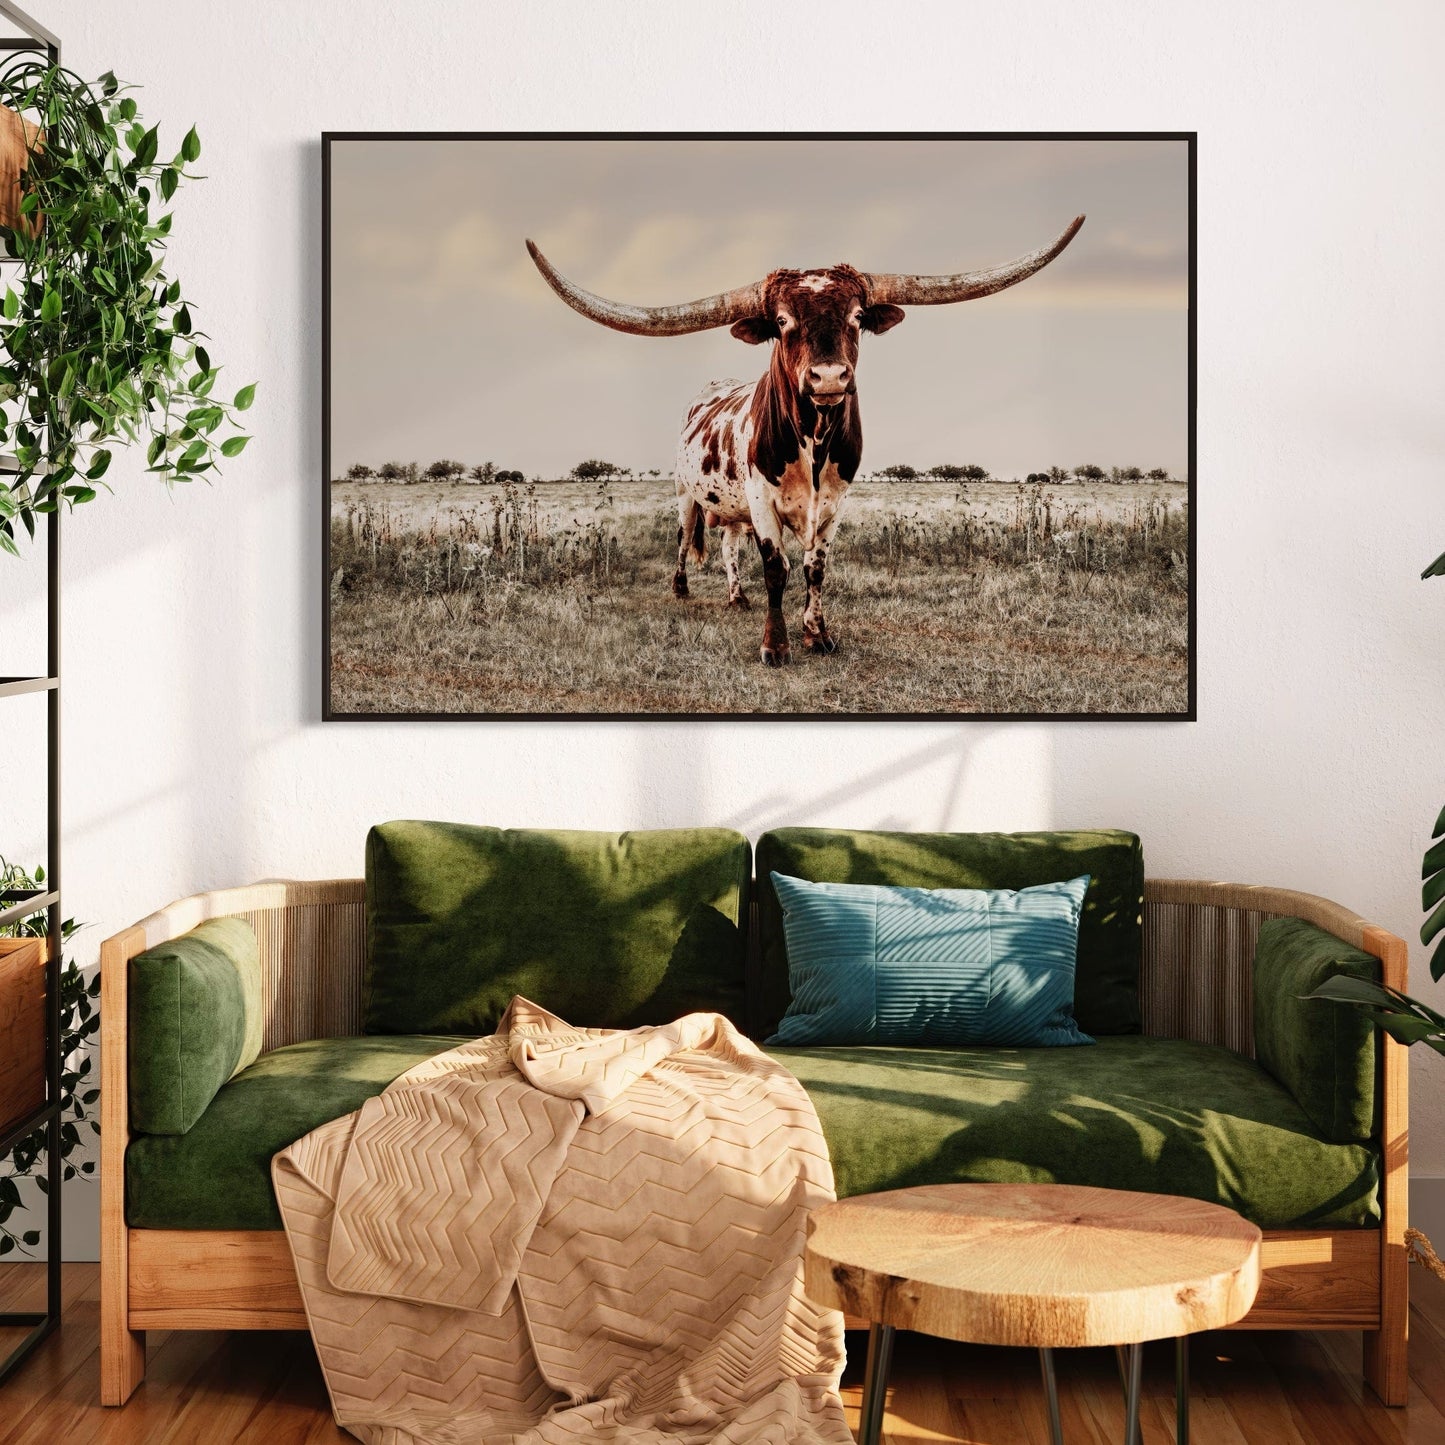 Texas Style Wall Decor - Longhorn bull Wall Art Teri James Photography